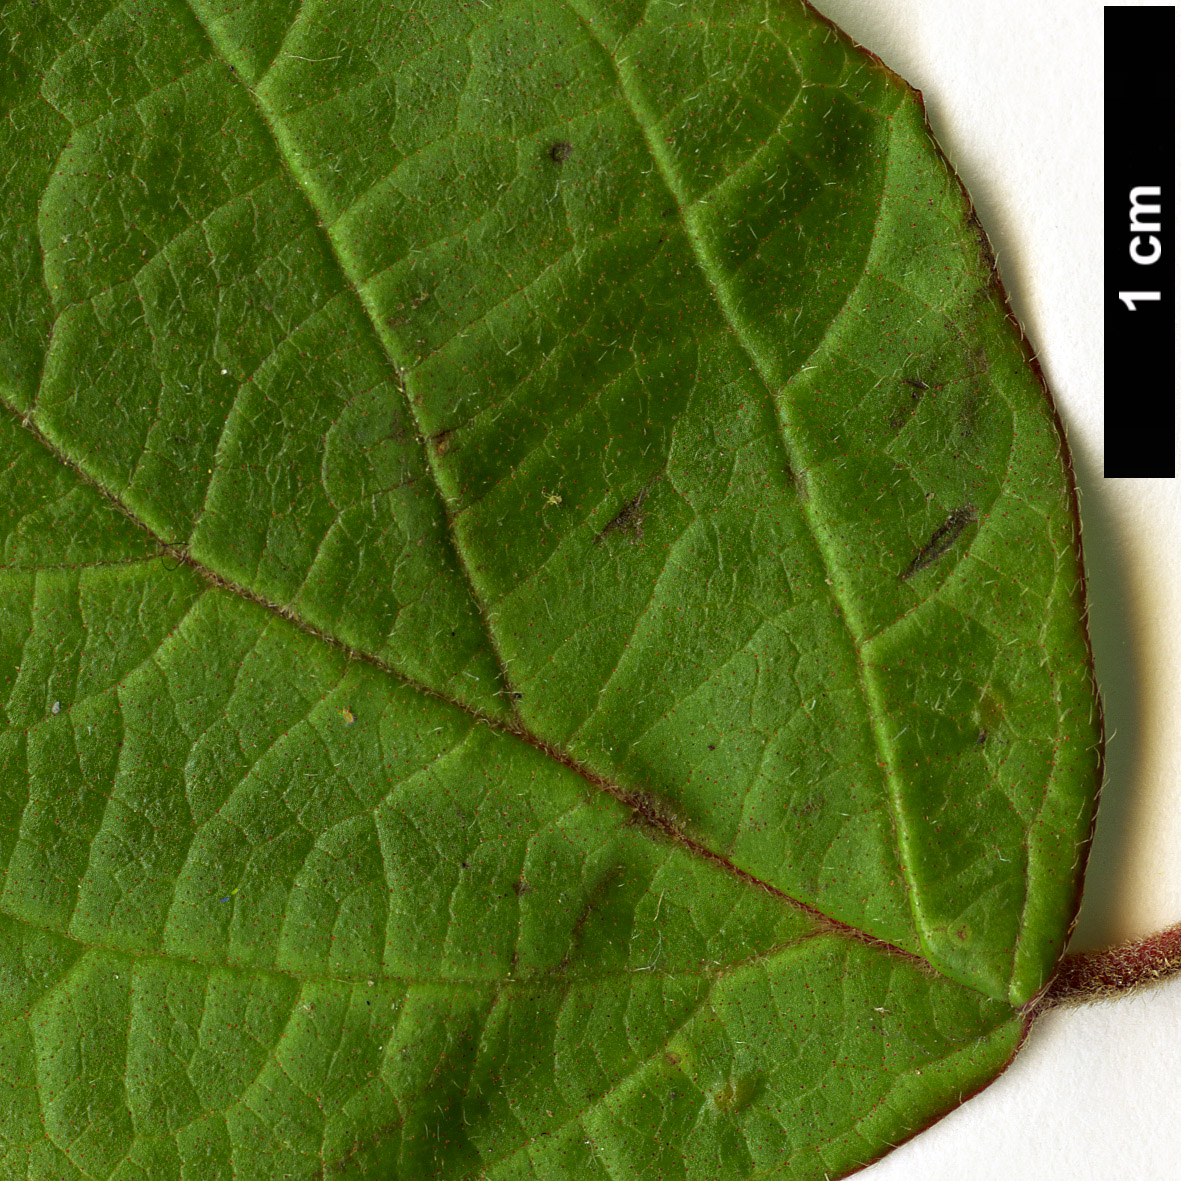 High resolution image: Family: Adoxaceae - Genus: Viburnum - Taxon: luzonicum